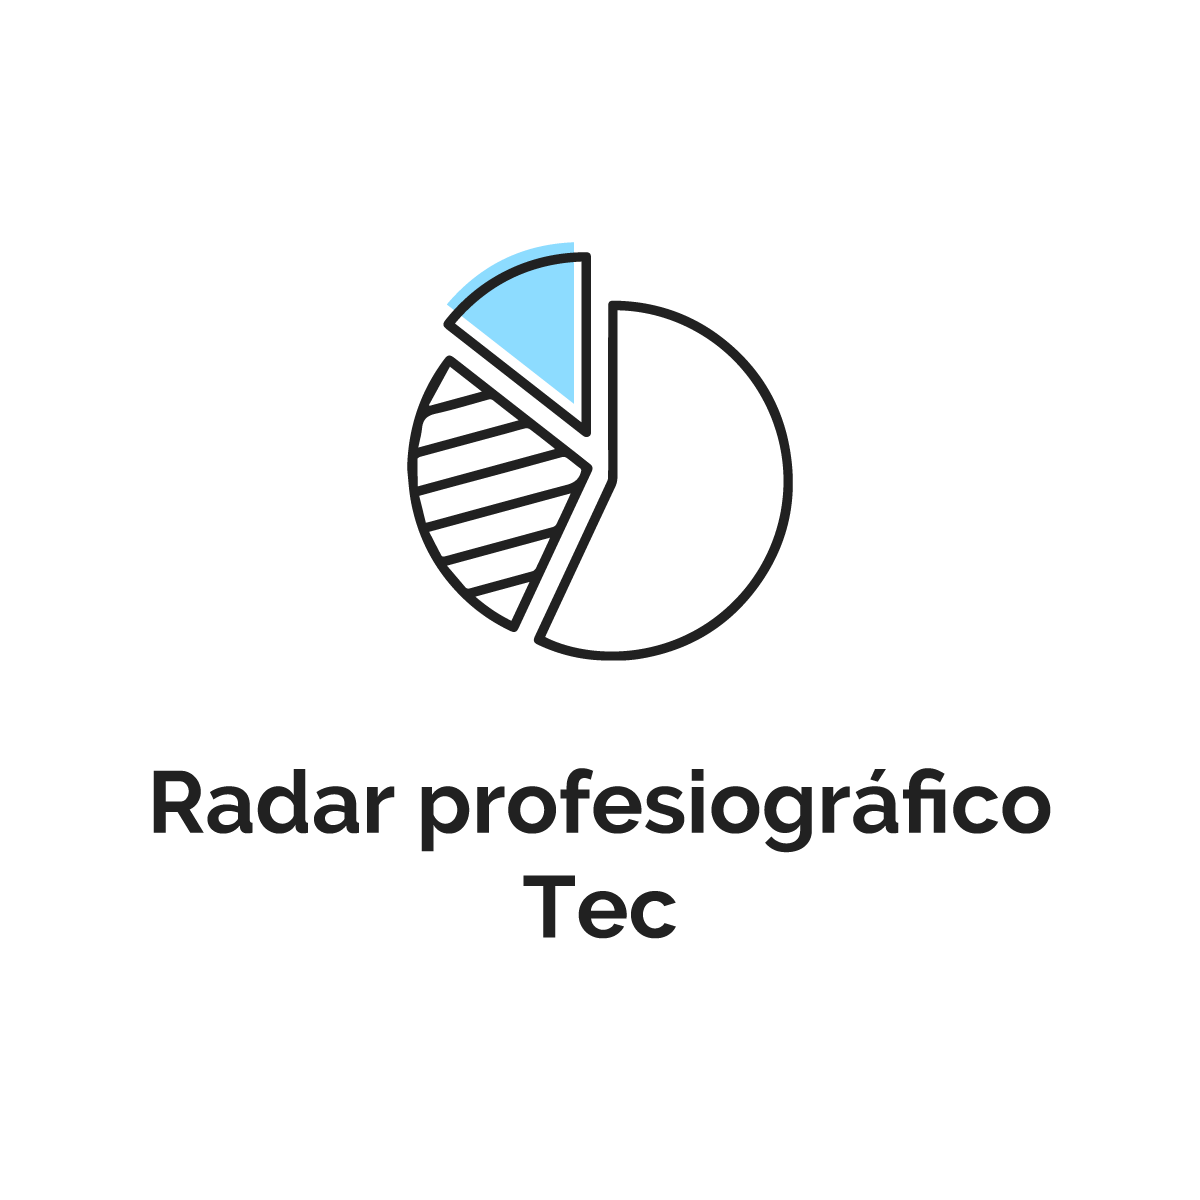 Radar profesiográfico Tec